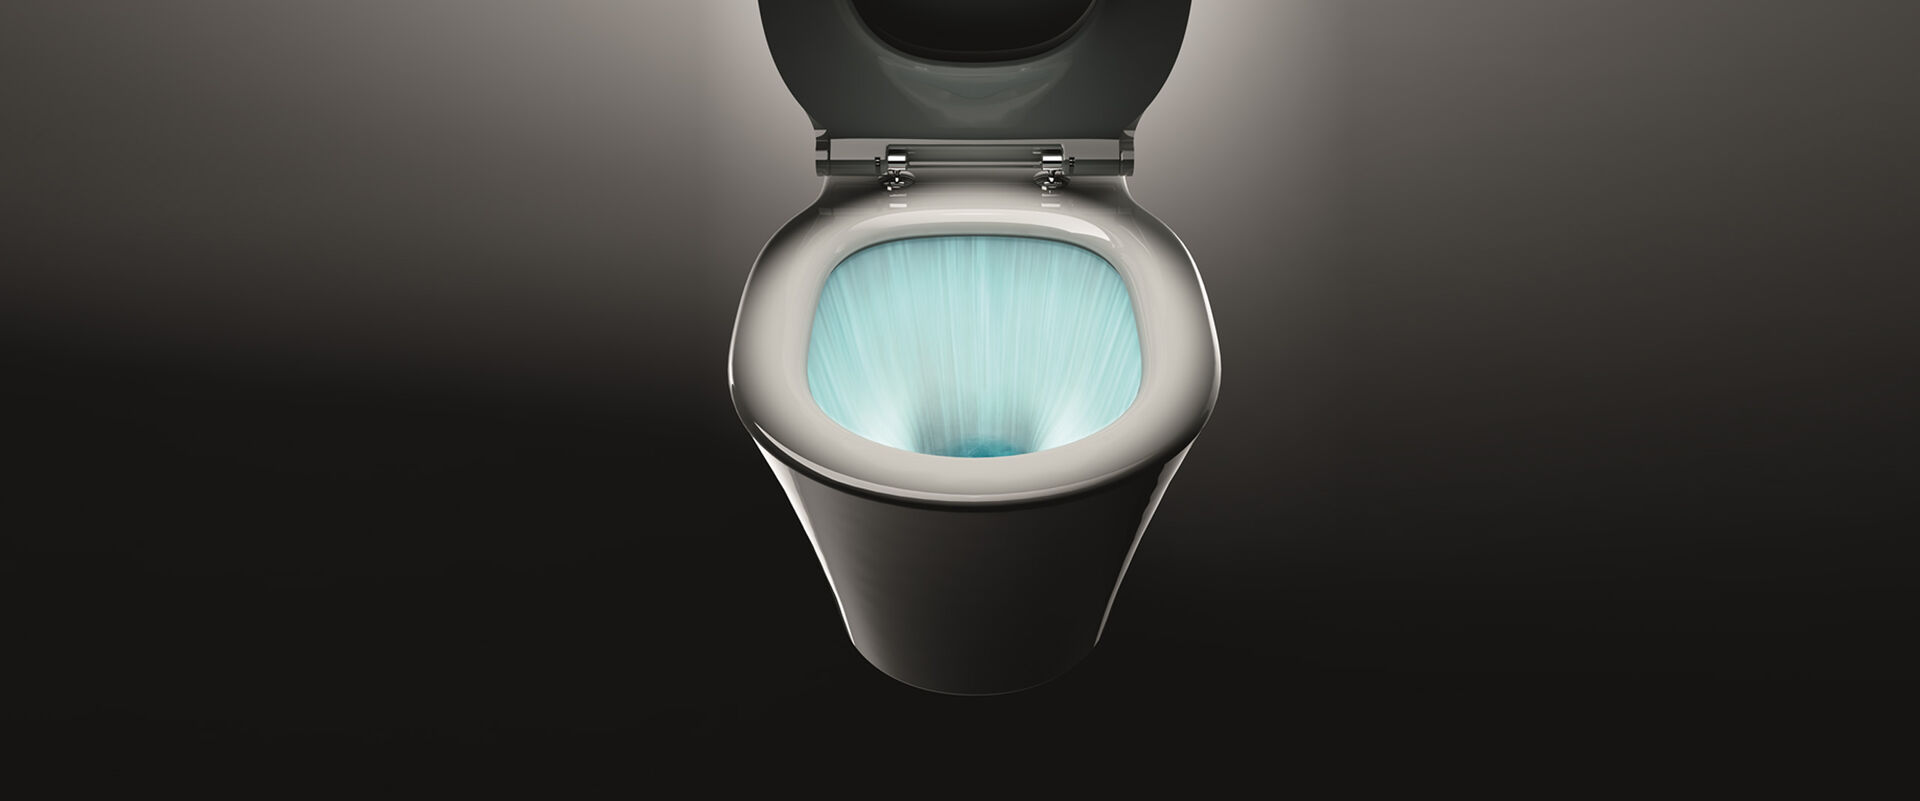 Magische Aufnahme eines geöffneten WCs vor einem schwarzen Hintergrund. Man sieht in das WC-Becken, wo dank AquaBlade Spültechnik Ideal Standard leuchtend eingefärbtes Wasser das komplette WC ausspült.